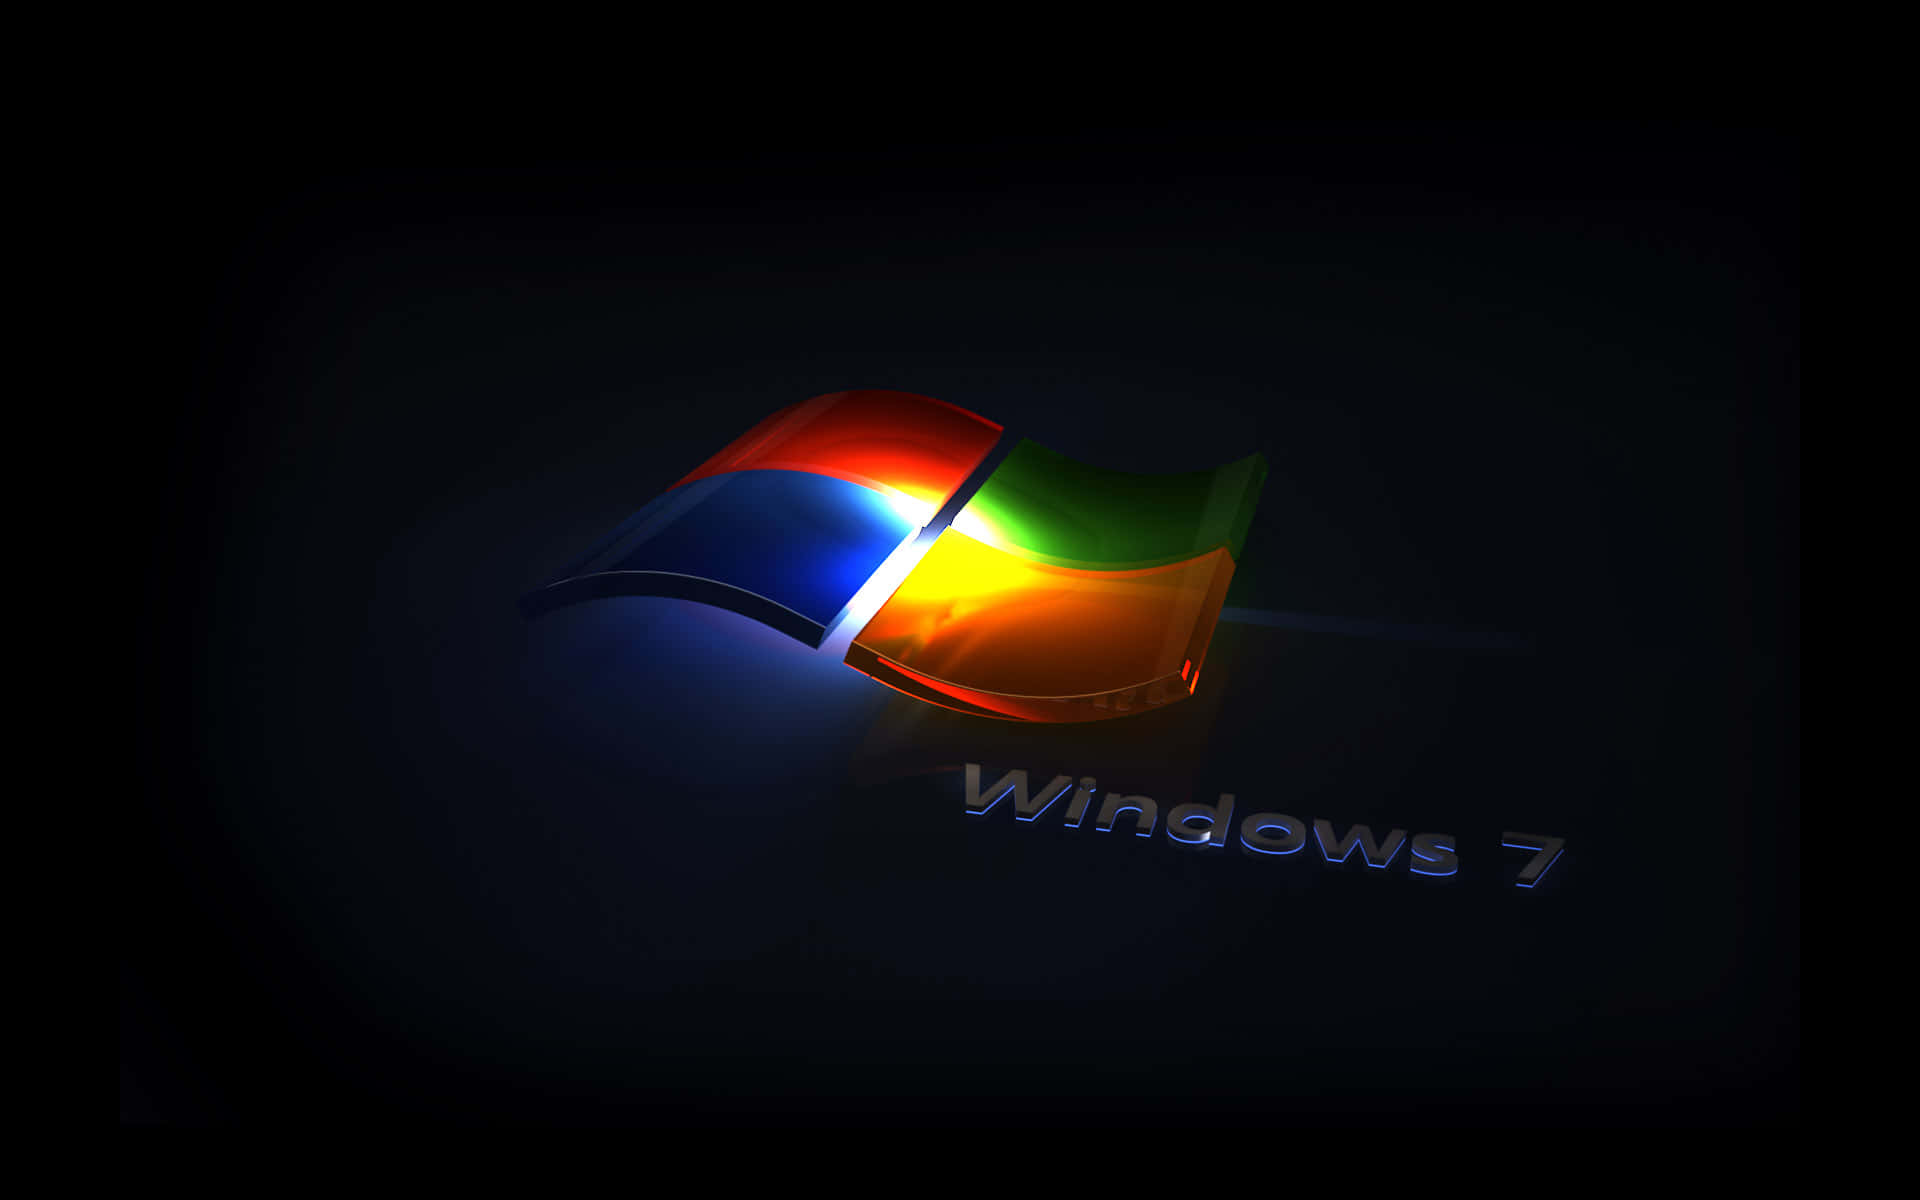 Genießensie Die Schönheit Der Ästhetik Von Windows 7.